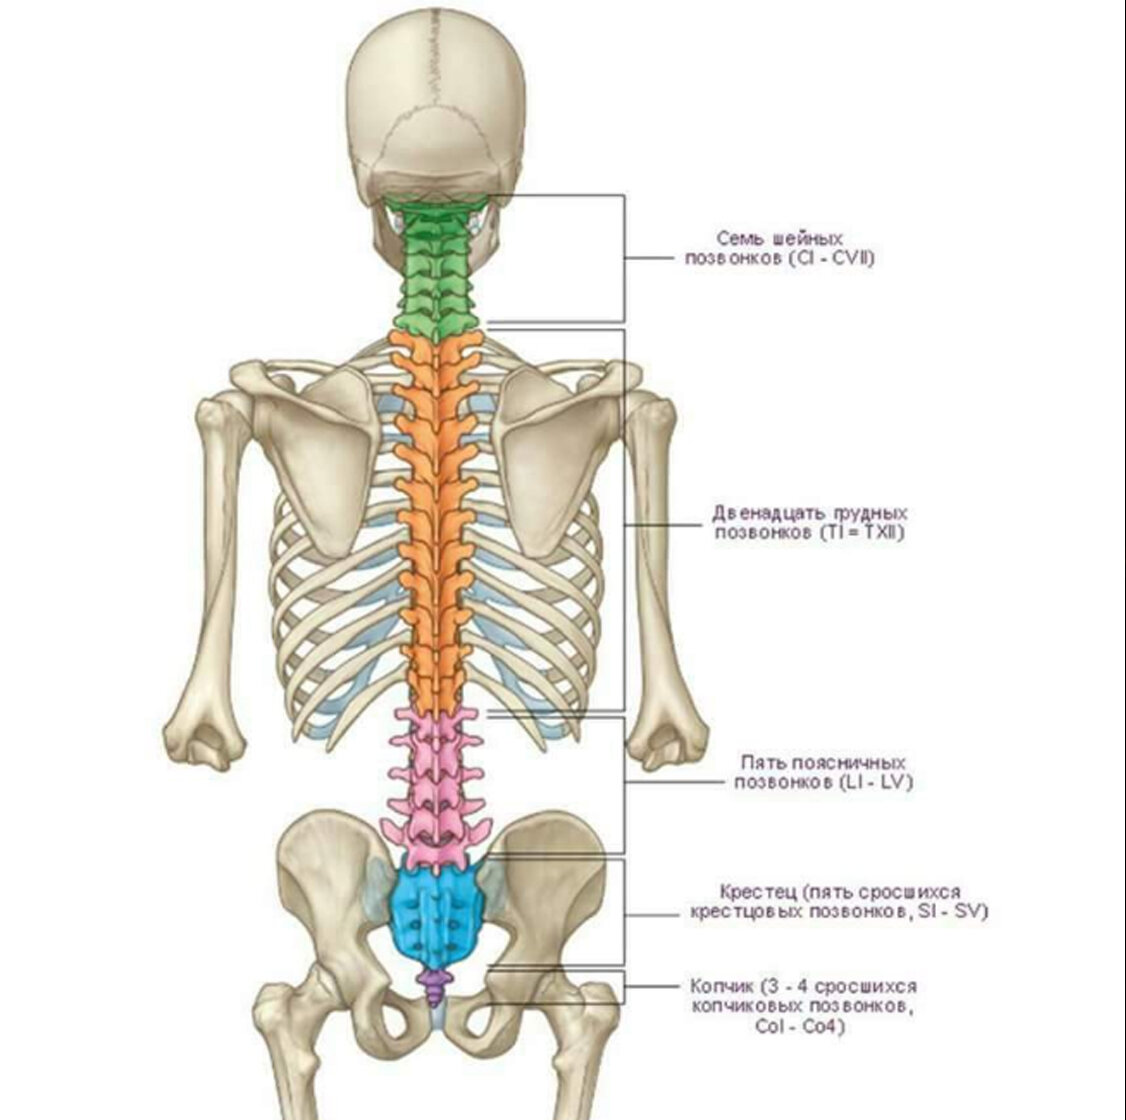 Показать поясницу. Анатомия человека кости скелета позвоночника. Анатомия костей поясничного отдела позвоночника. Отделы позвоночника человека на скелете человека.